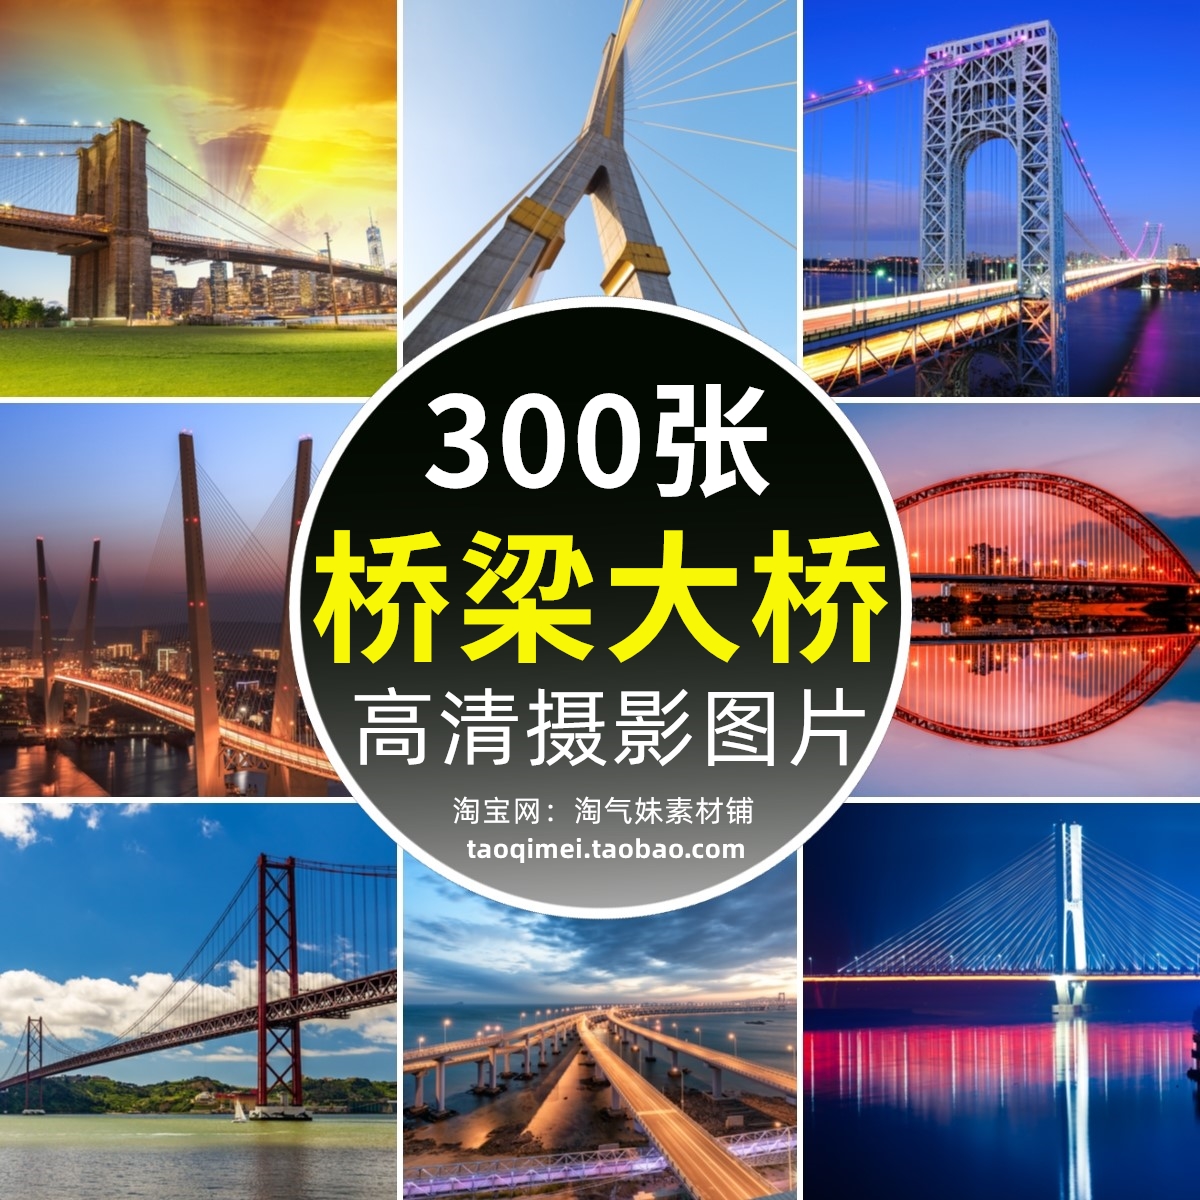 高清JPG城市桥梁图片跨海跨江大桥中国世界著名大桥建筑摄影素材